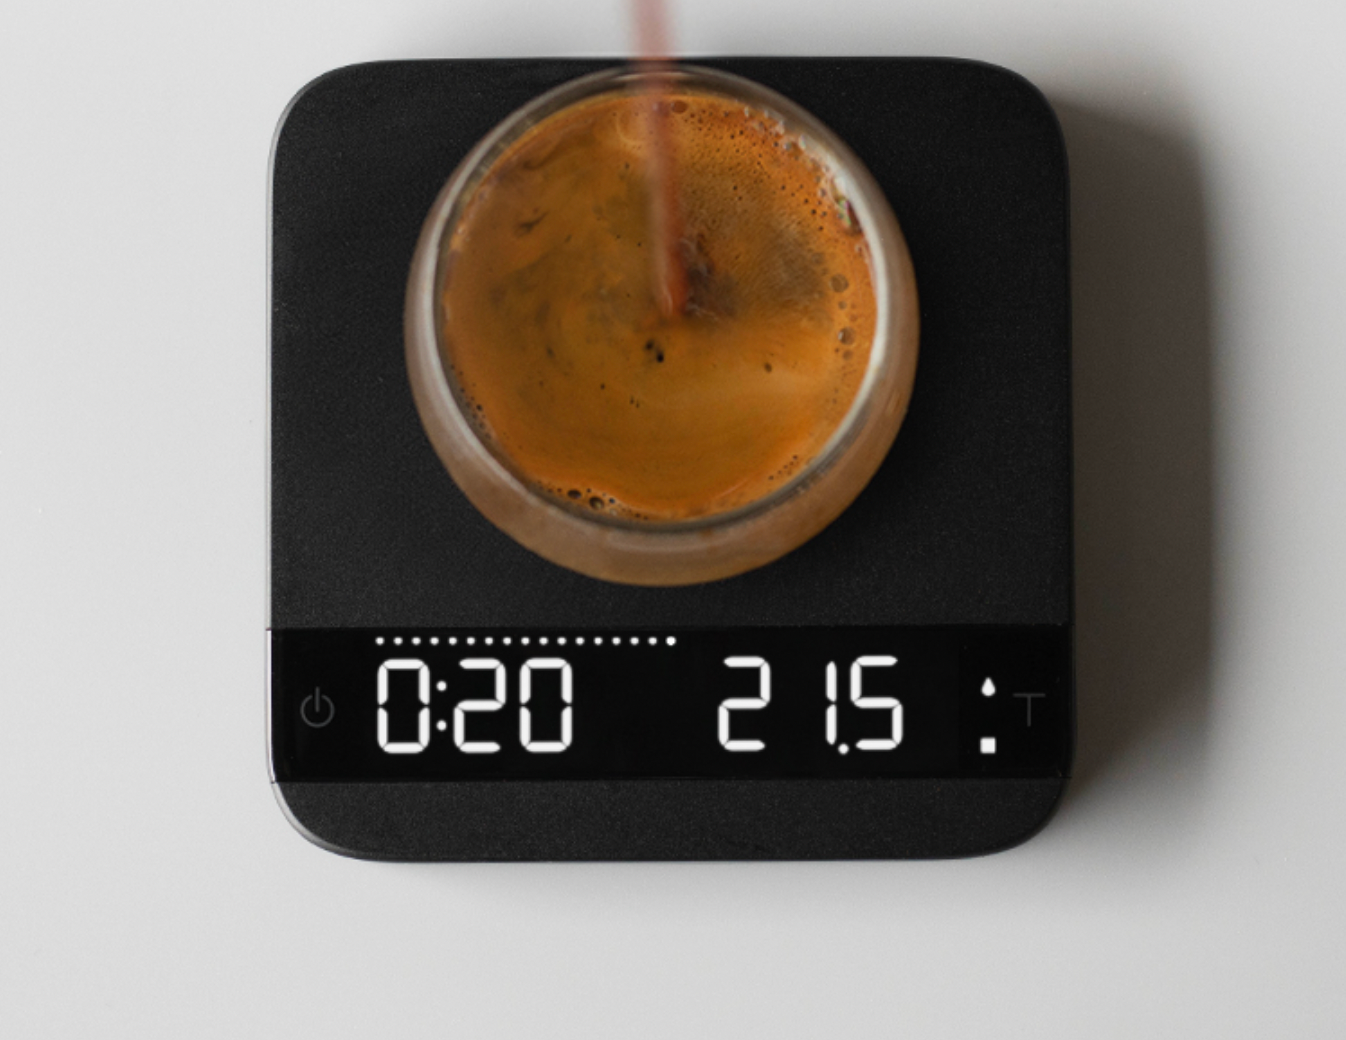 Acaia Lunar Espresso Scale – Coffea School